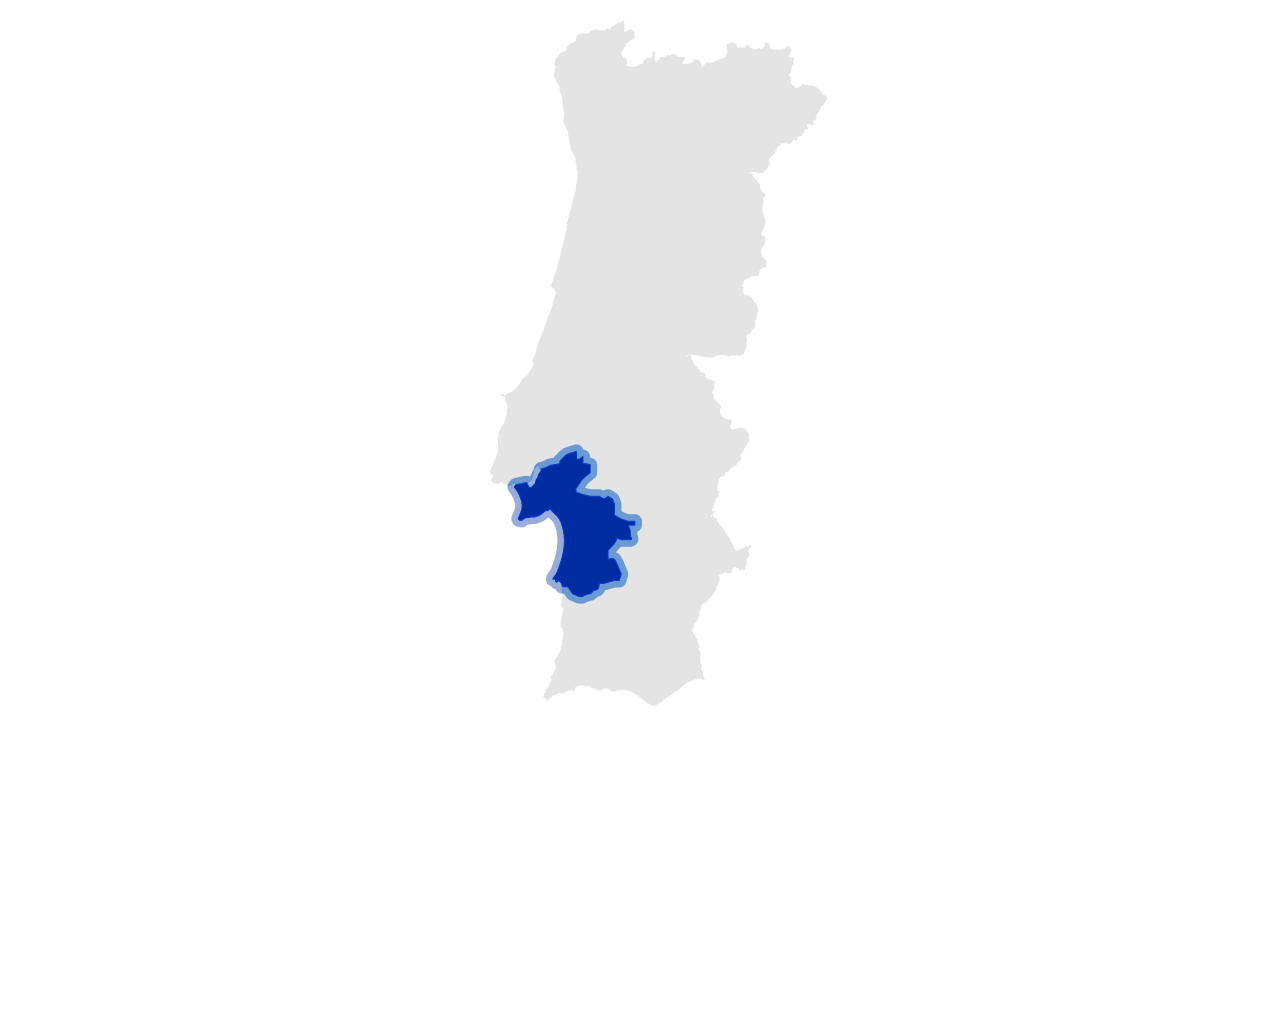 About the Península de Setúbal 0